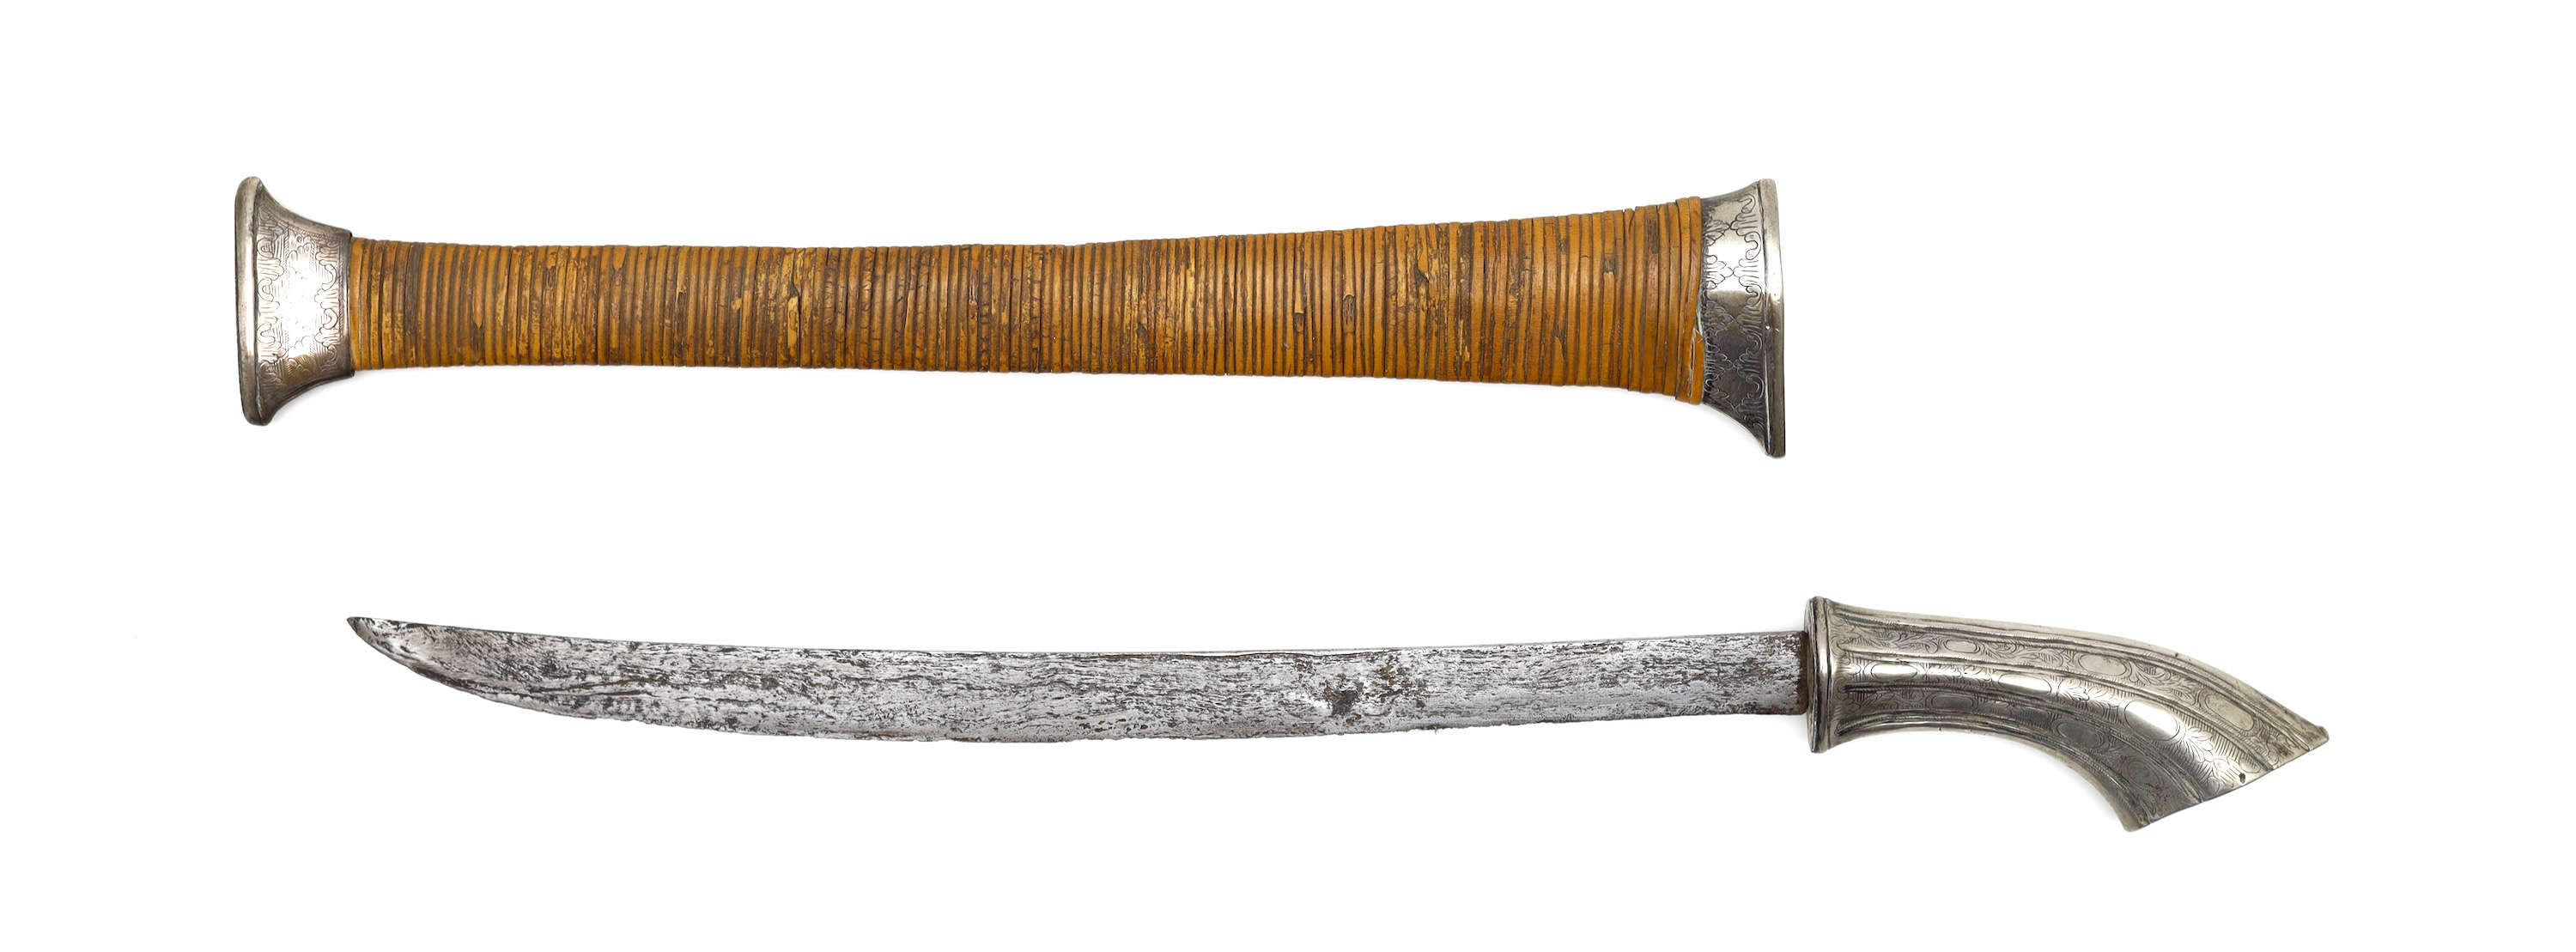 West-Java gobang sword